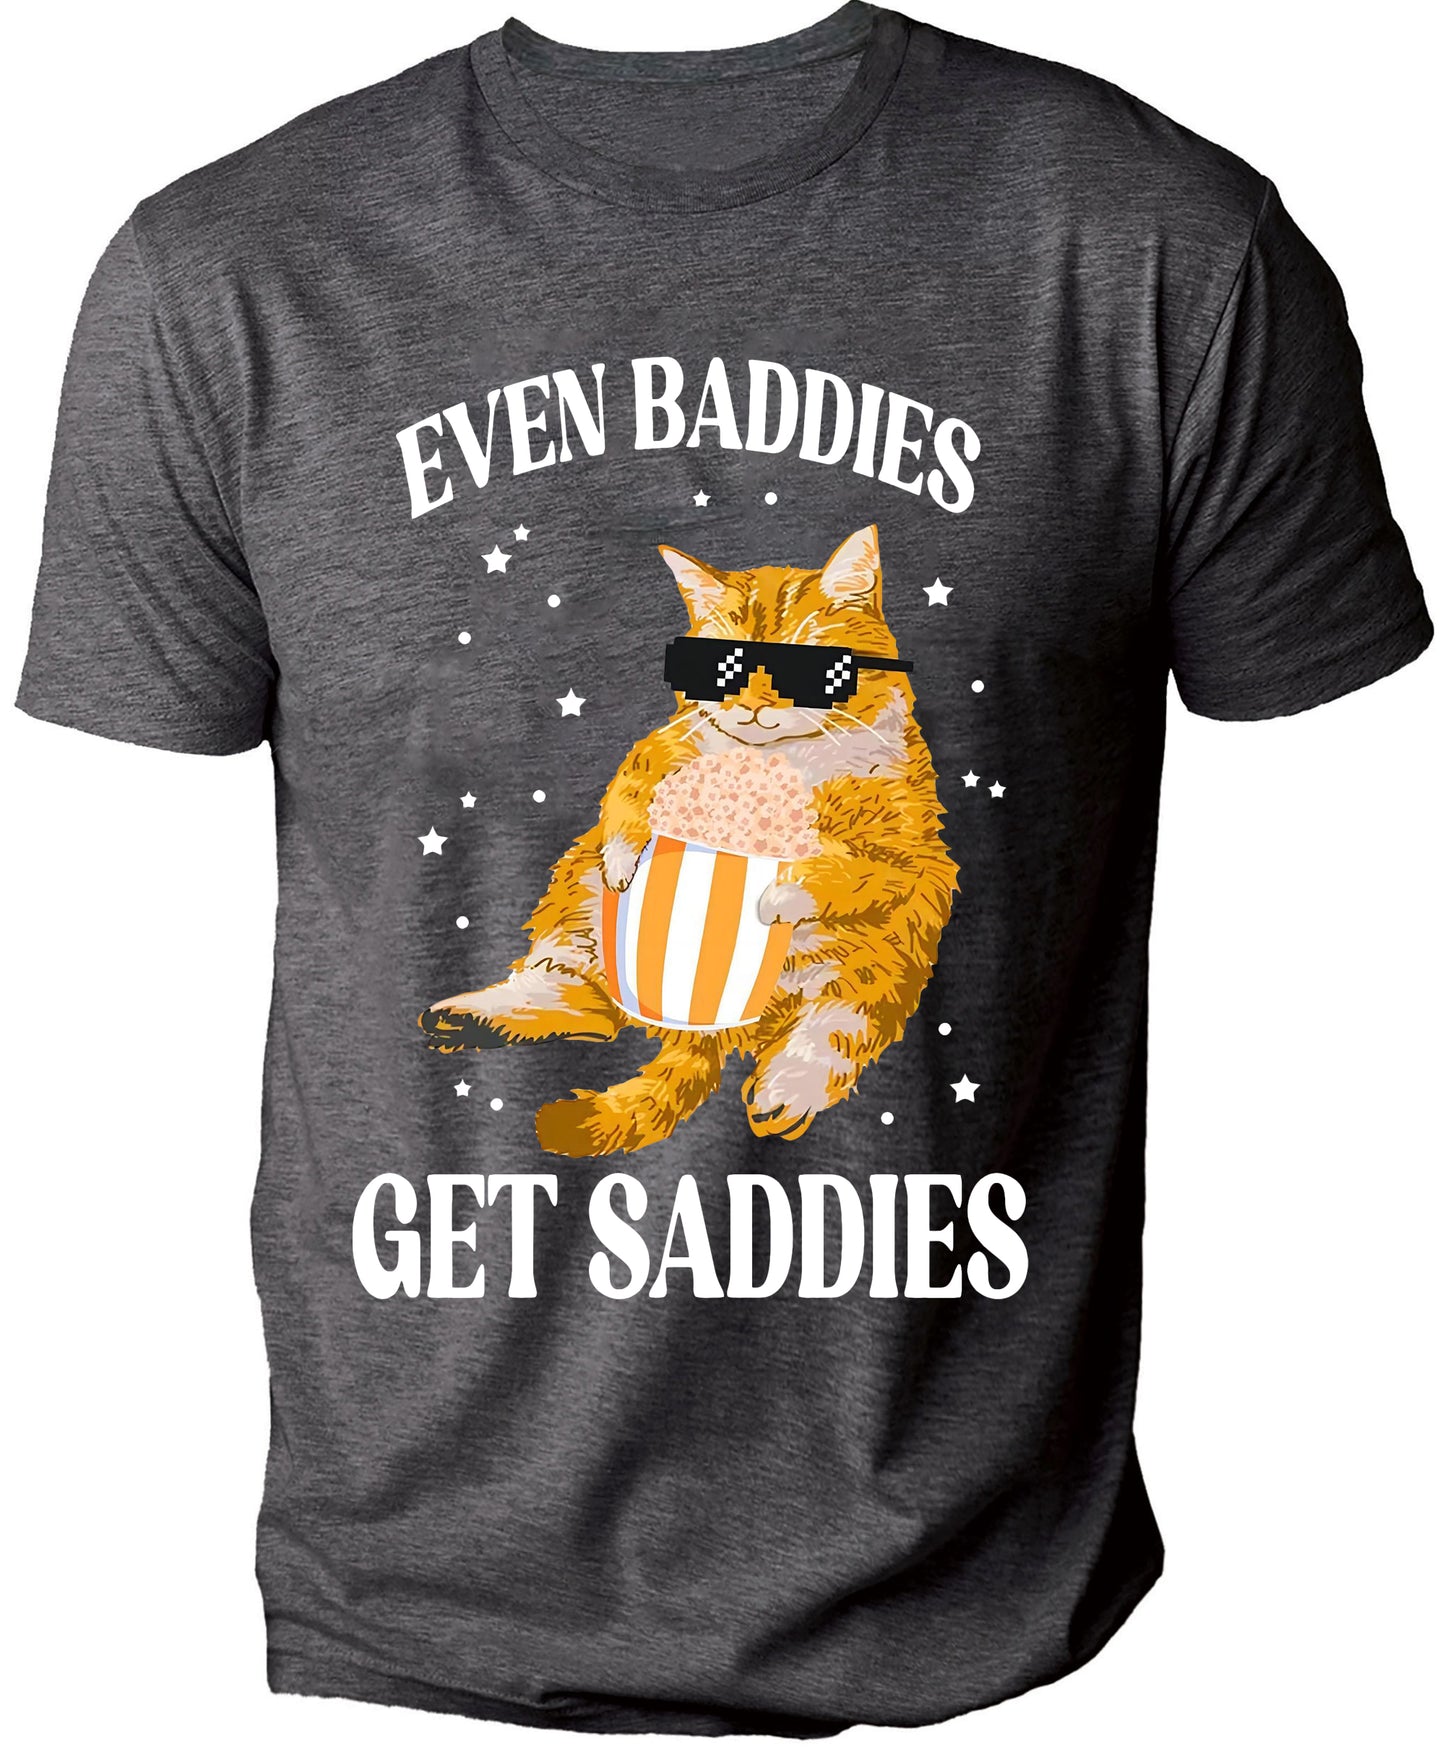 Even Baddies Get Saddies Casual Men's T-Shirt